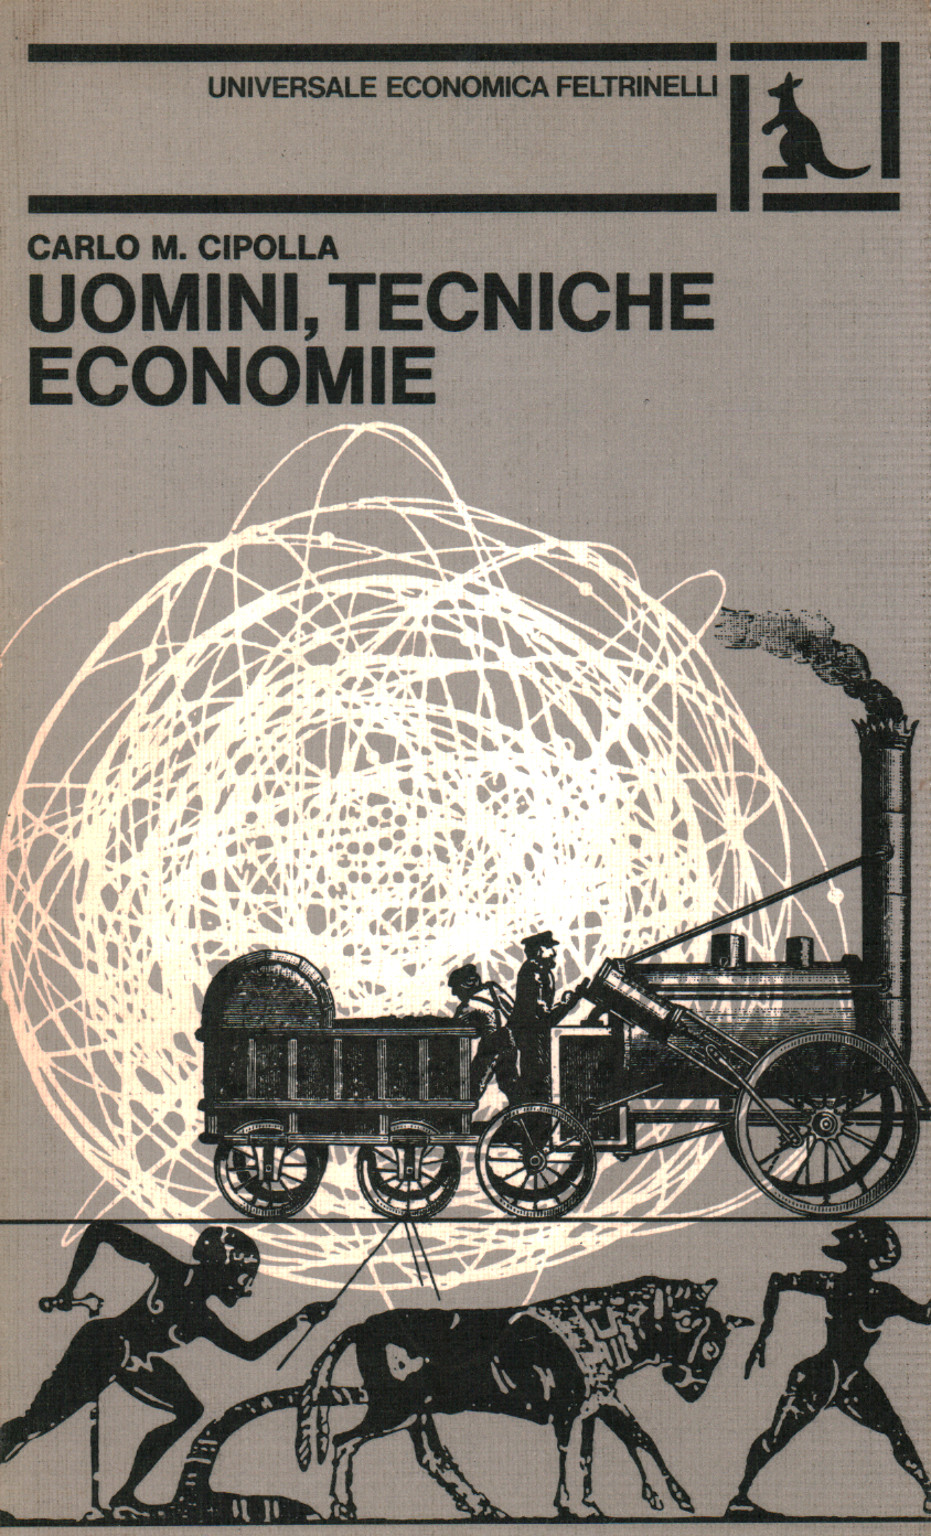 Uomini,tecniche economie, s.a.